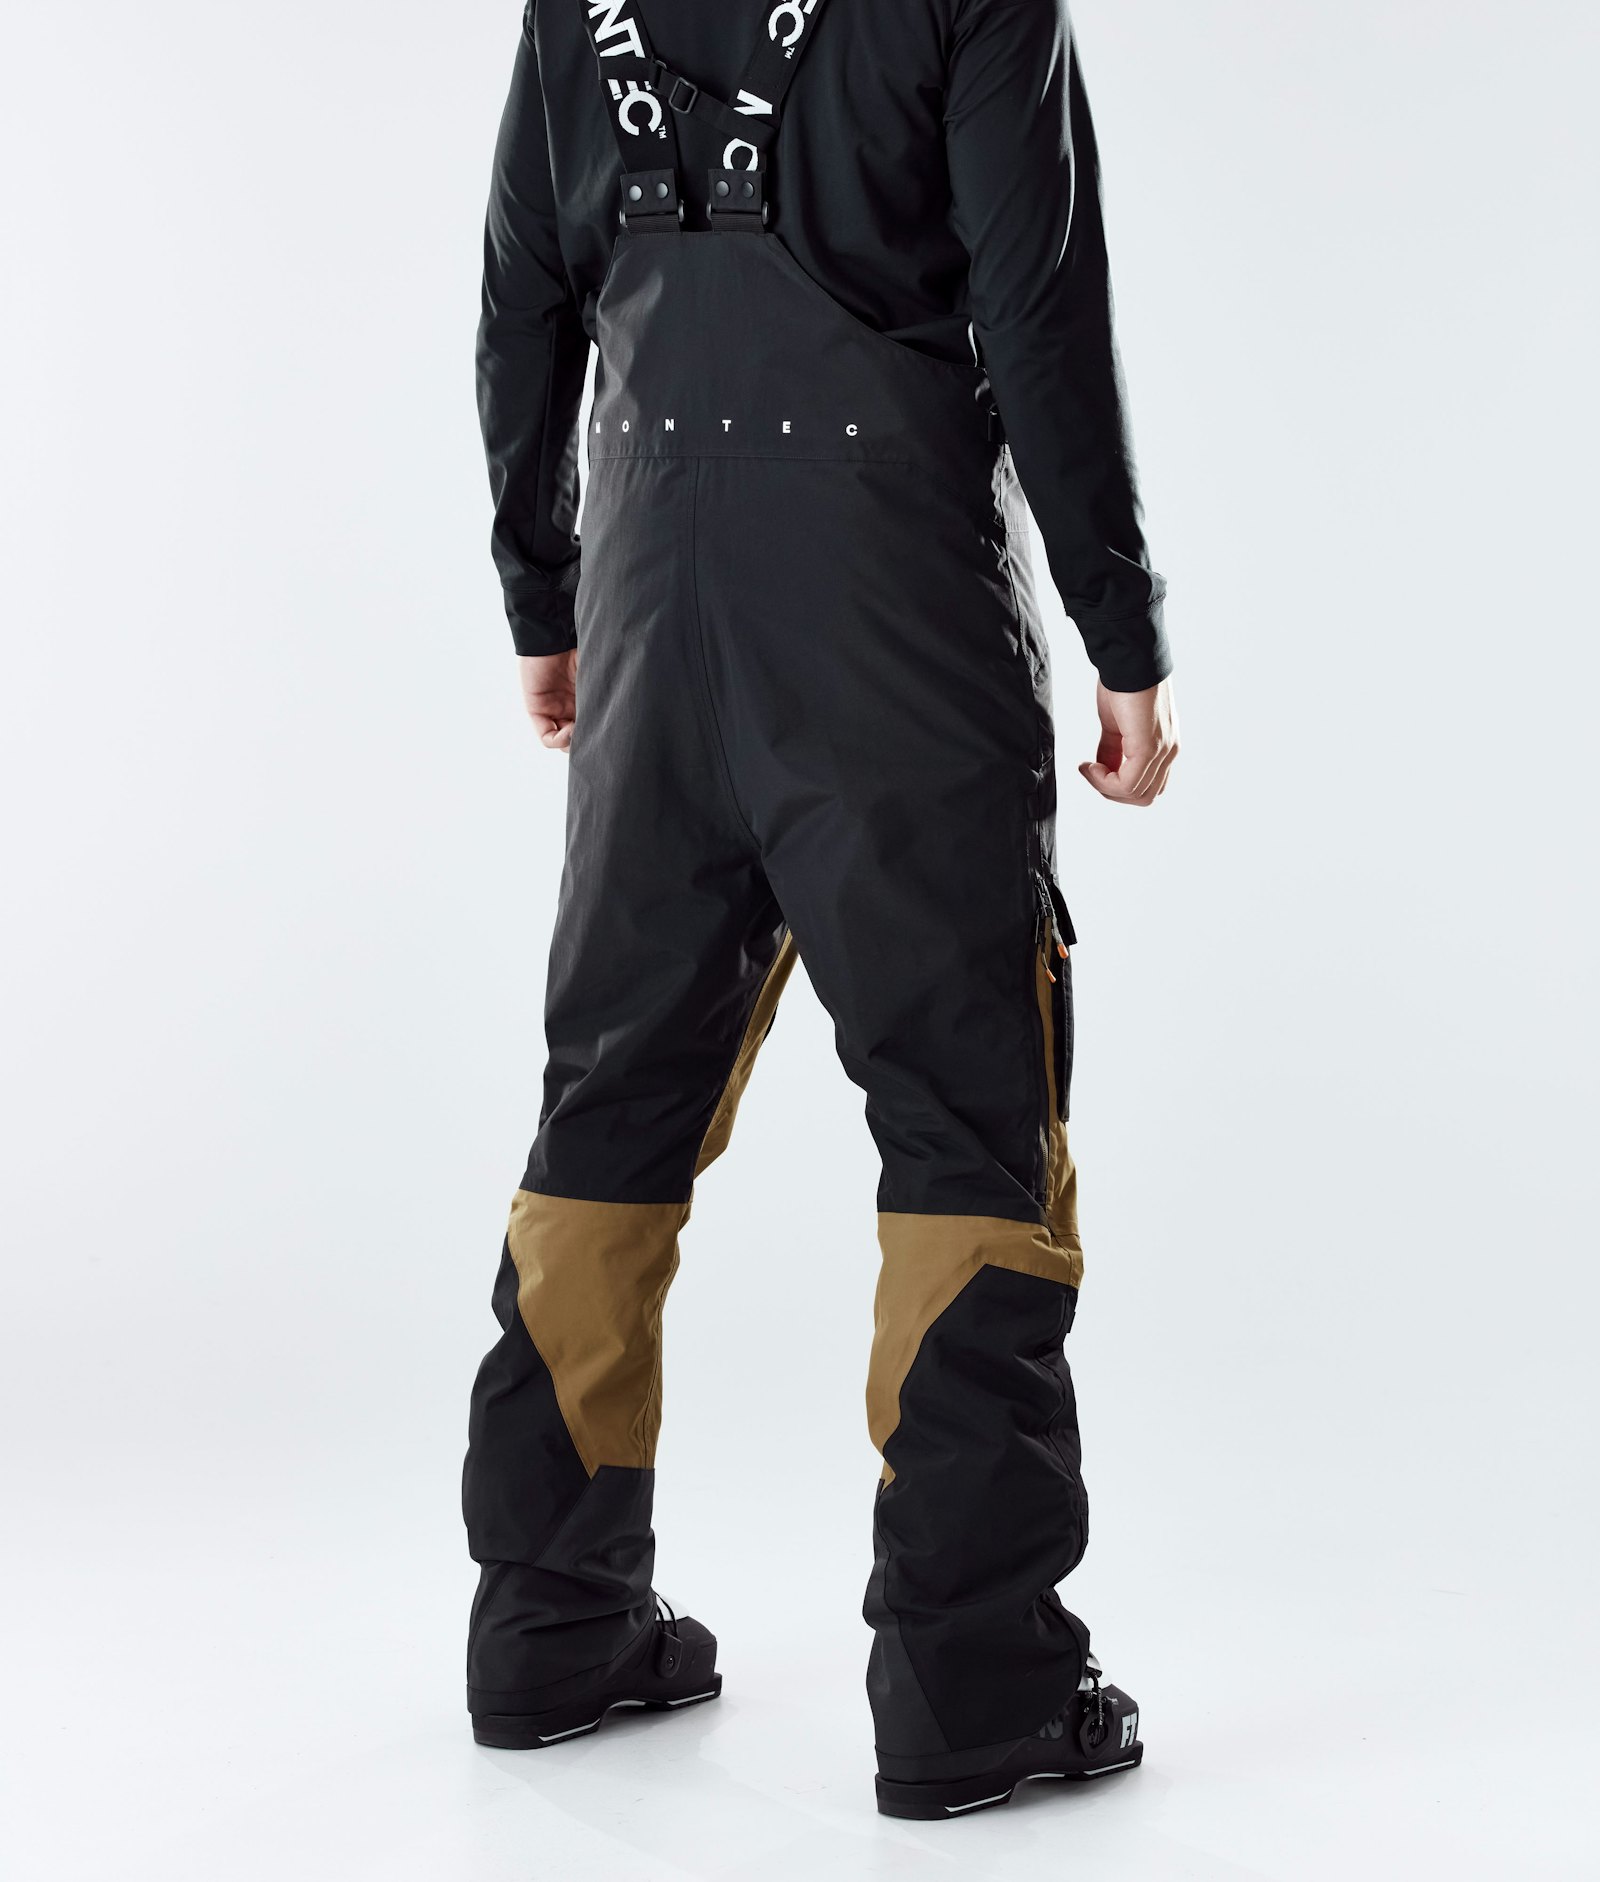 Montec Fawk 2020 Pantalon de Ski Homme Black/Gold